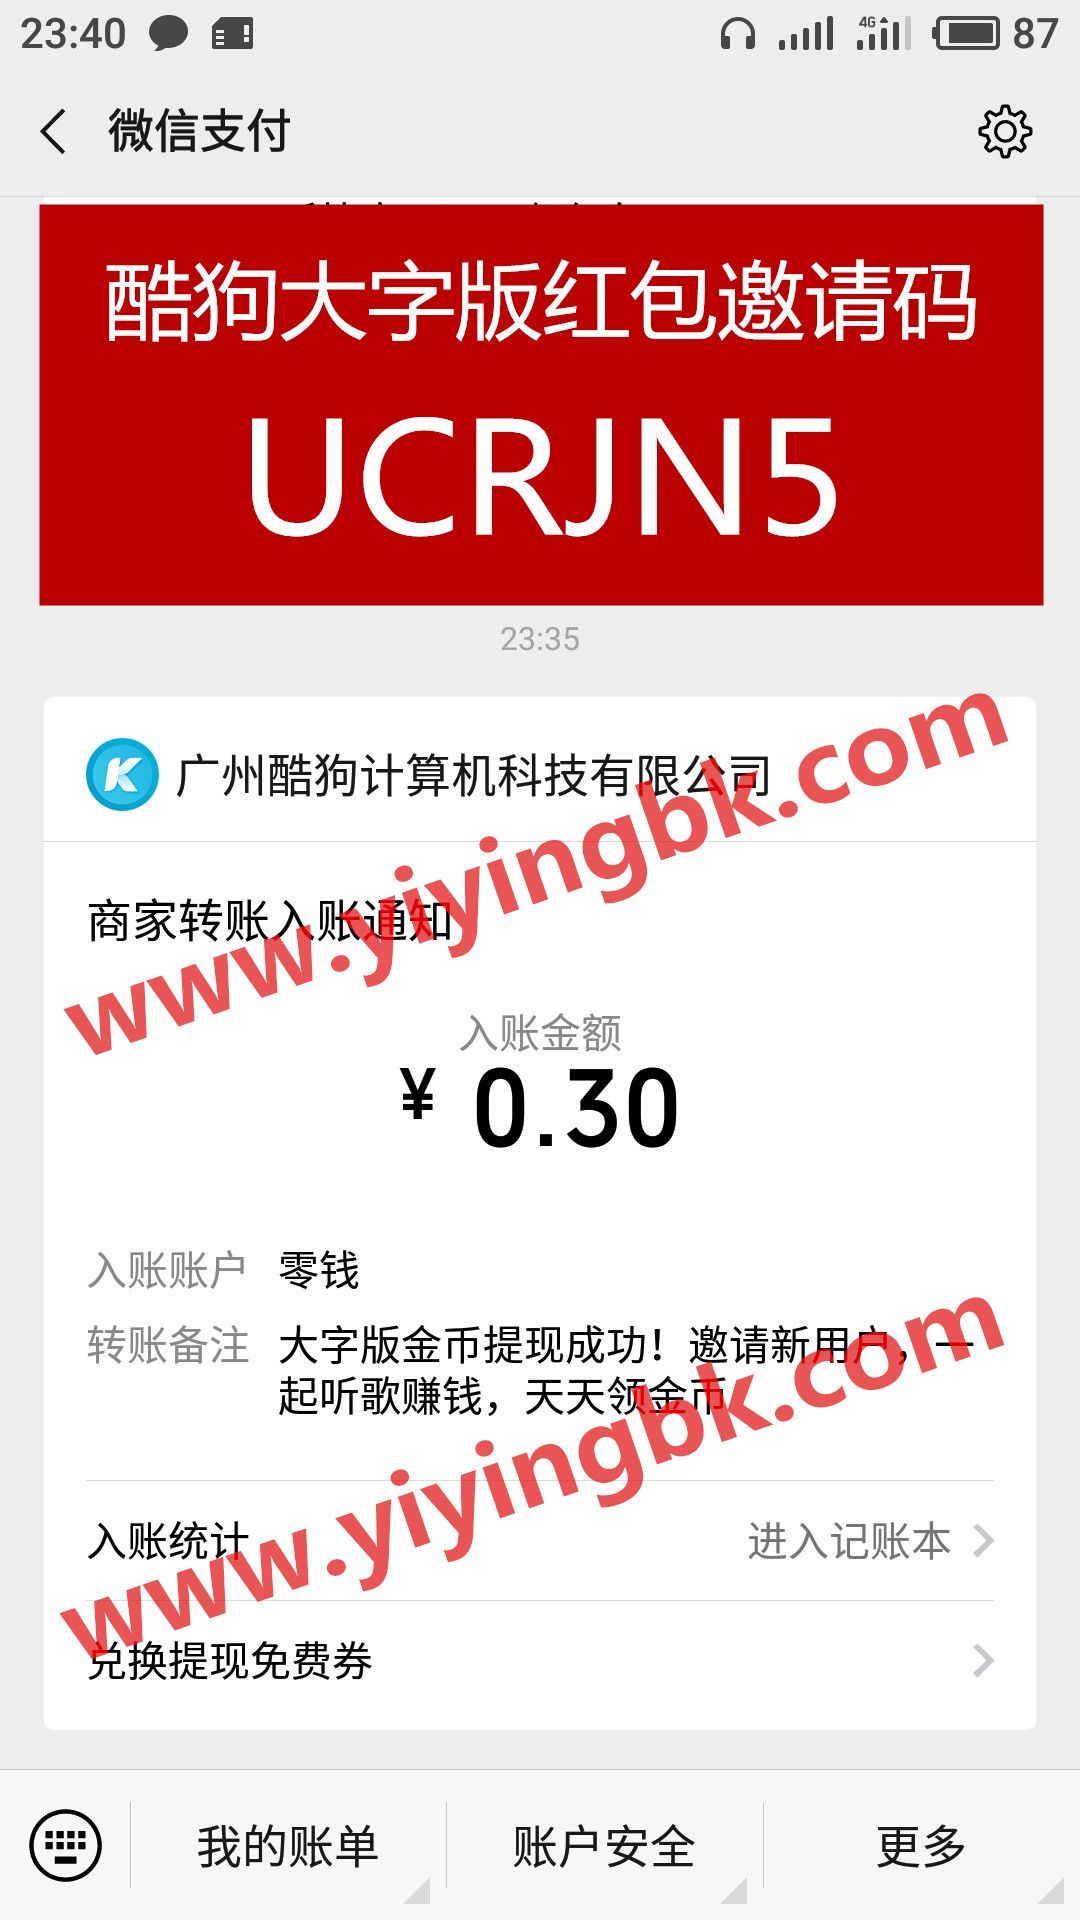 酷狗音乐大字版红包邀请码UCRJN5，免费听歌听音乐还能领红包赚零花钱，微信提现0.3元秒到账。www.yiyingbk.com